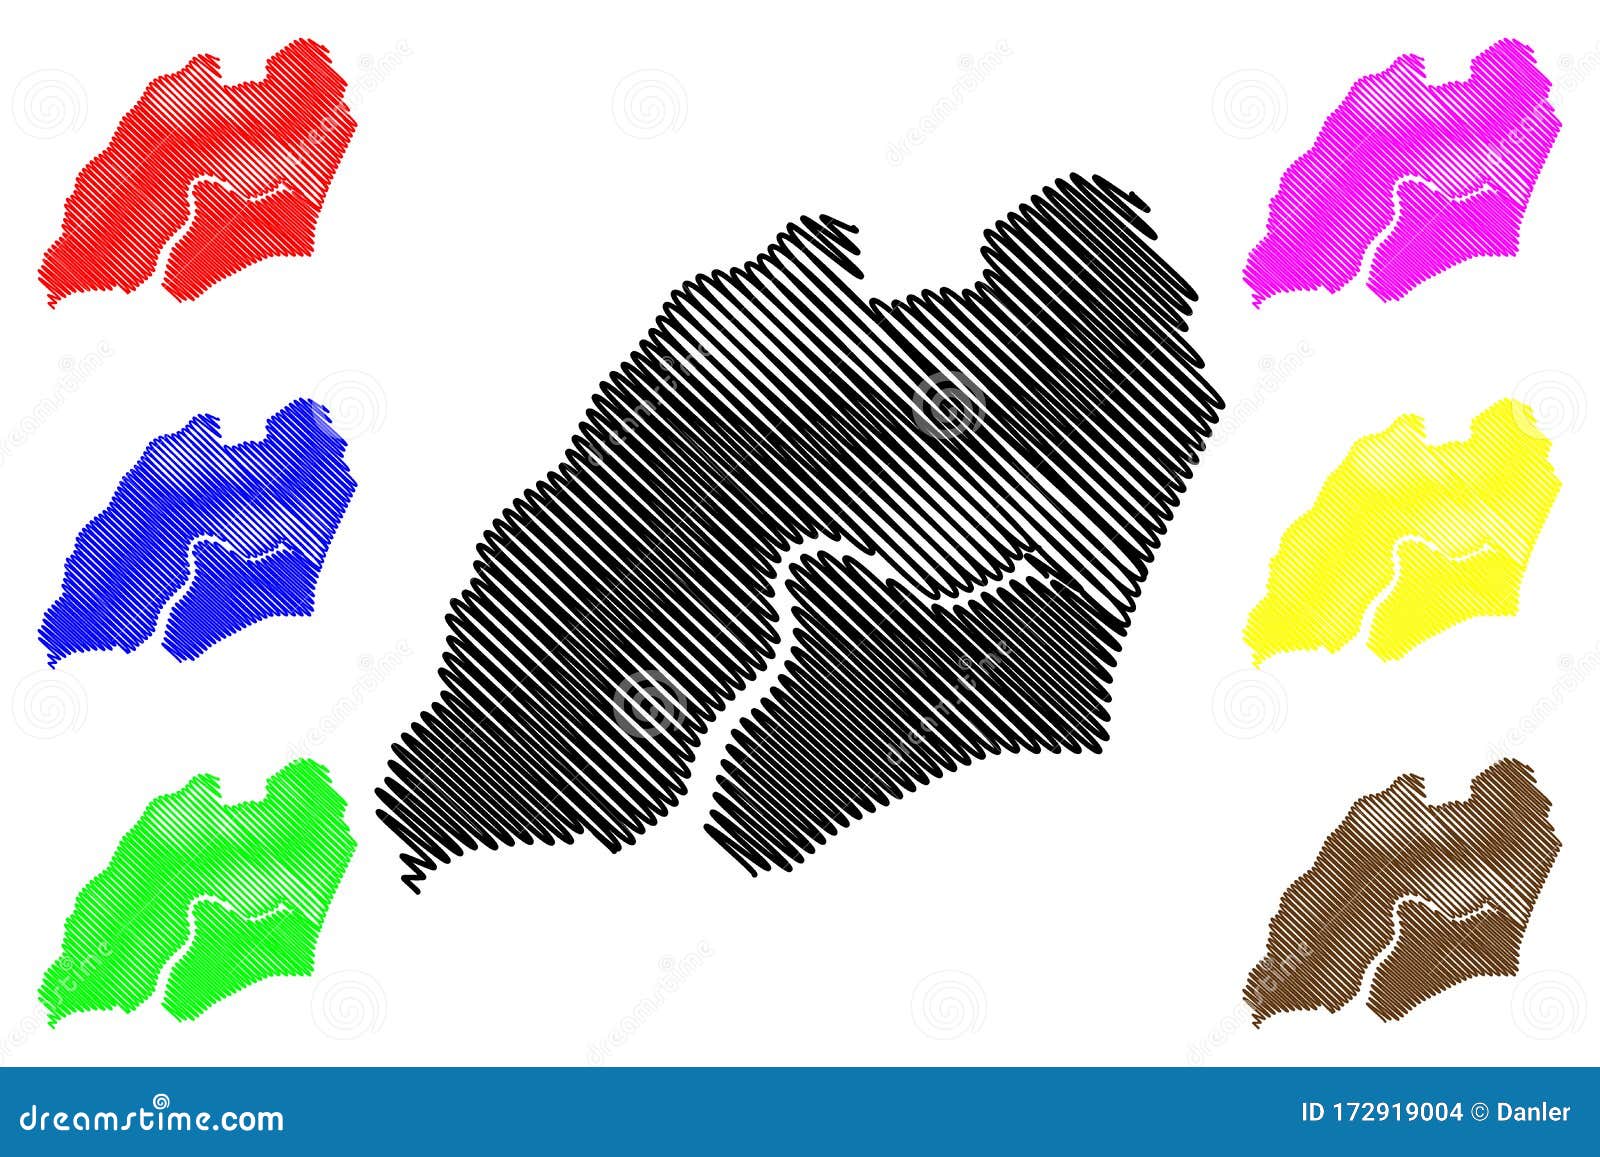 biombo region republic of guinea-bissau, regions of guinea bissau map  , scribble sketch biombo map